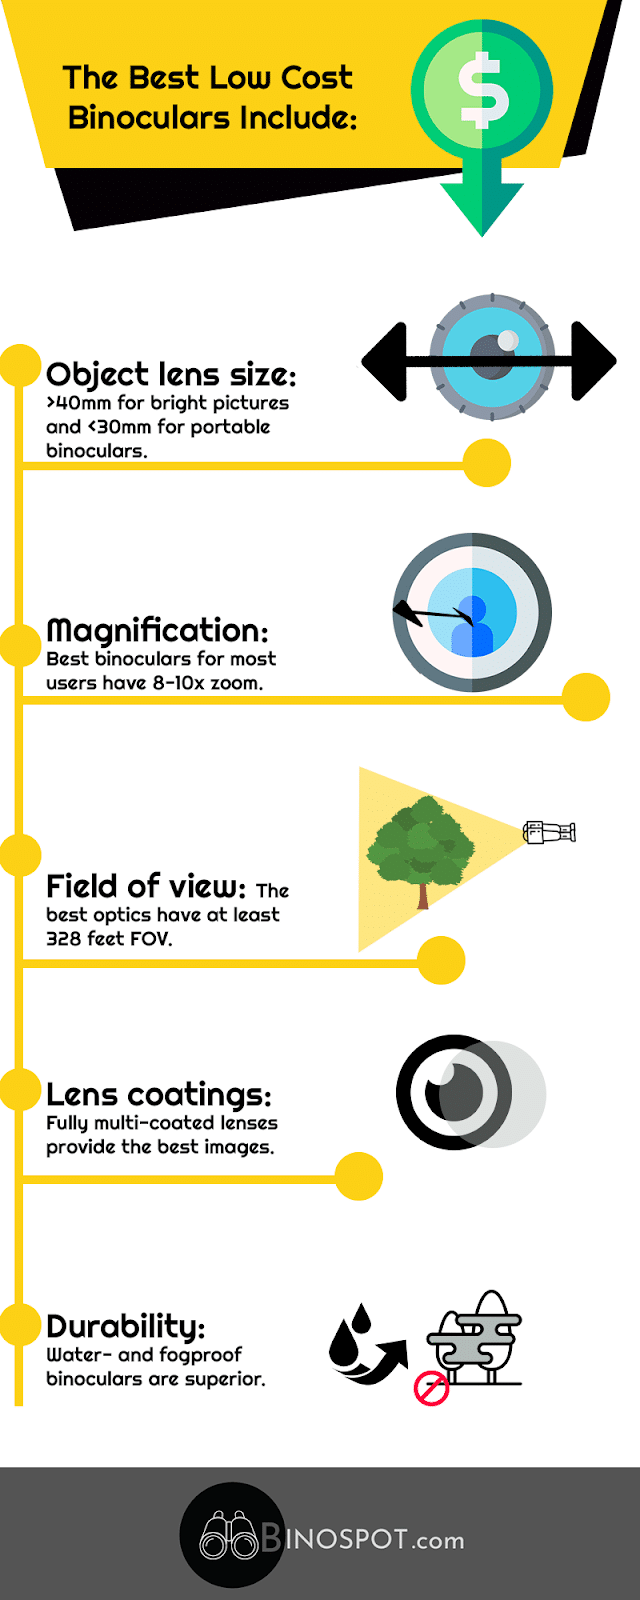 Best Low-Cost Binoculars infographic